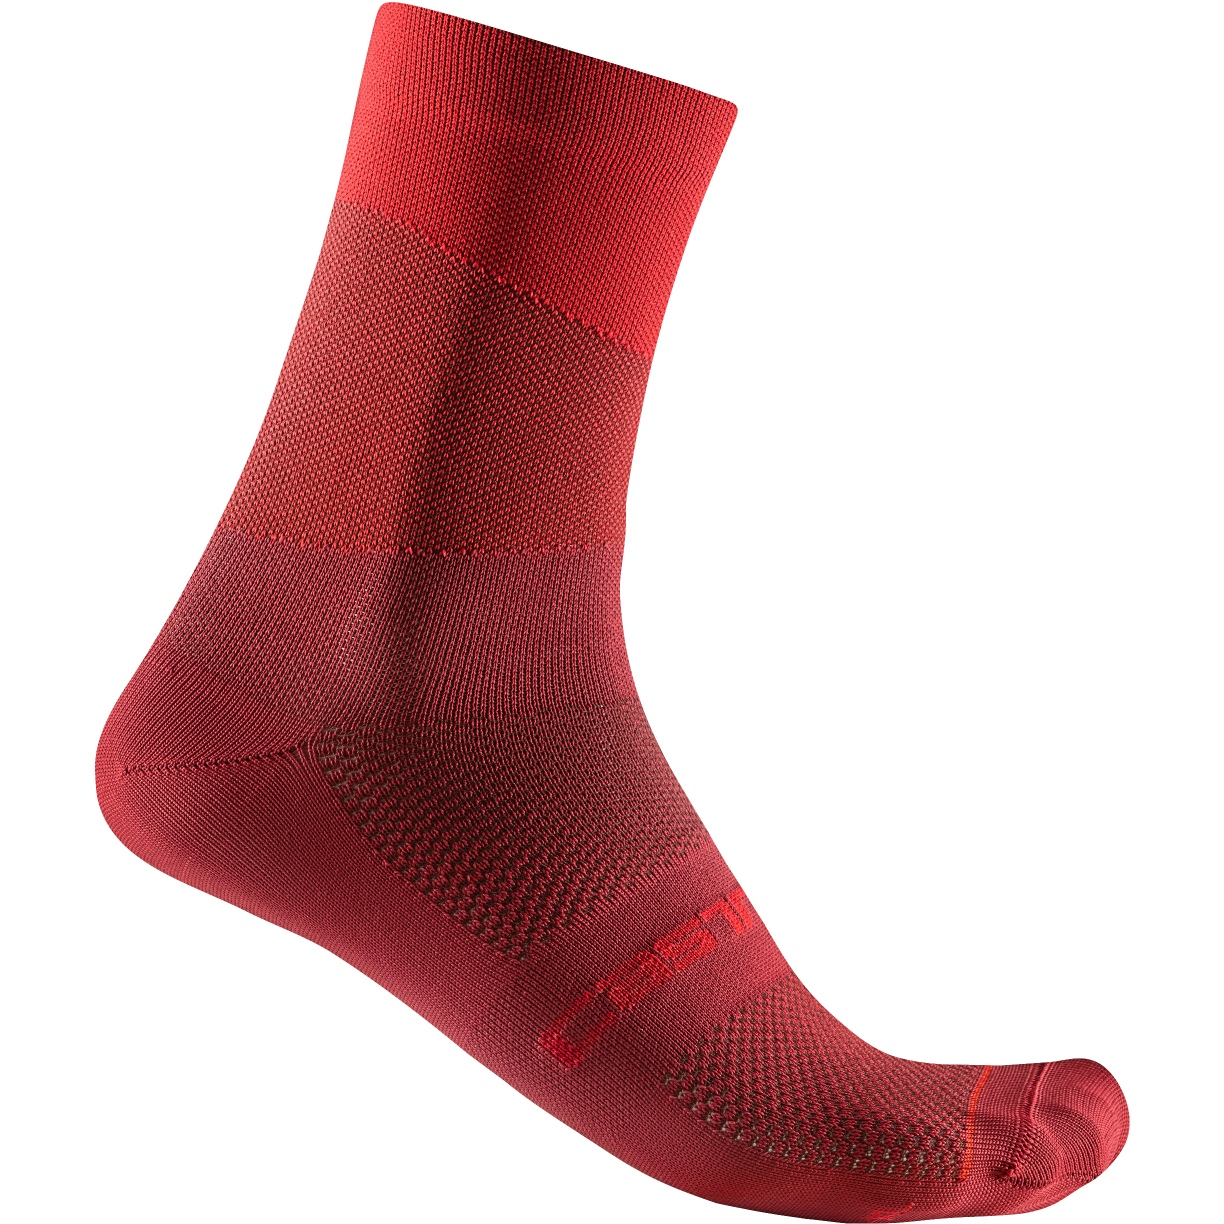 Produktbild von Castelli Orizzonte 15 Socken - red cst/rich red 023